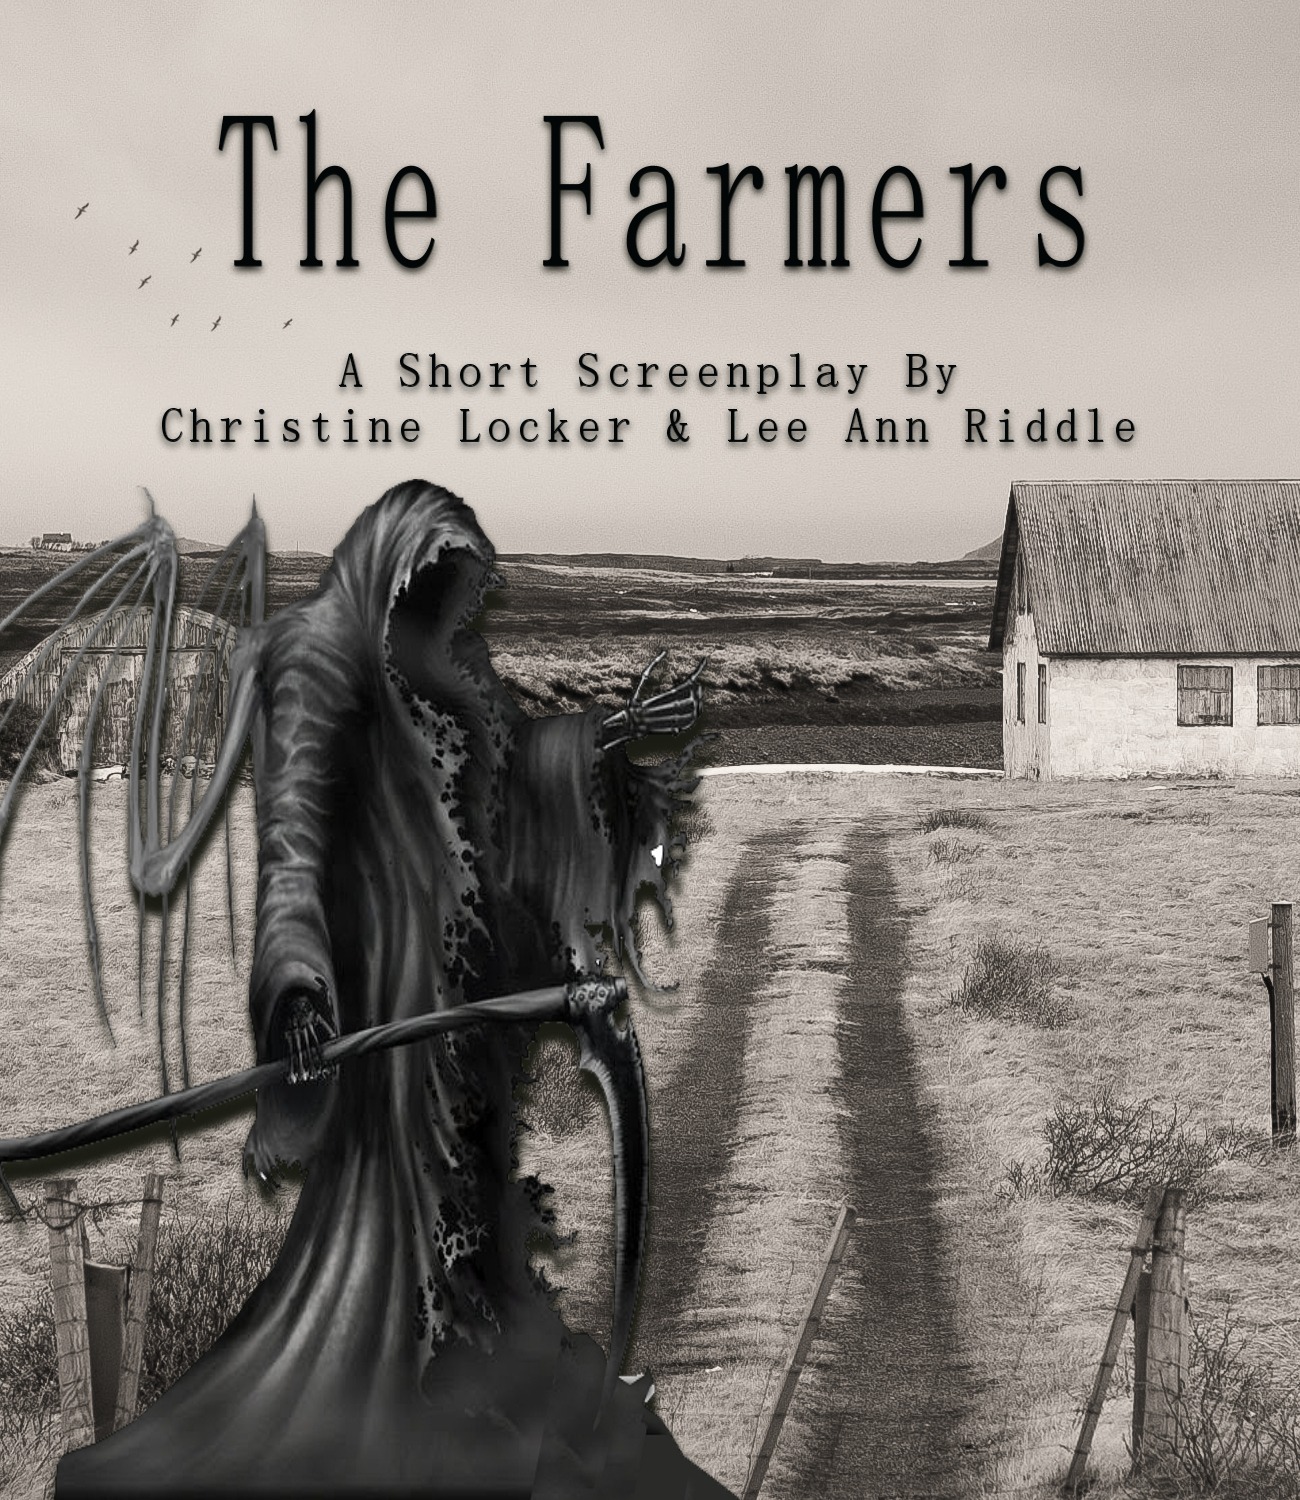 THE FARMERS